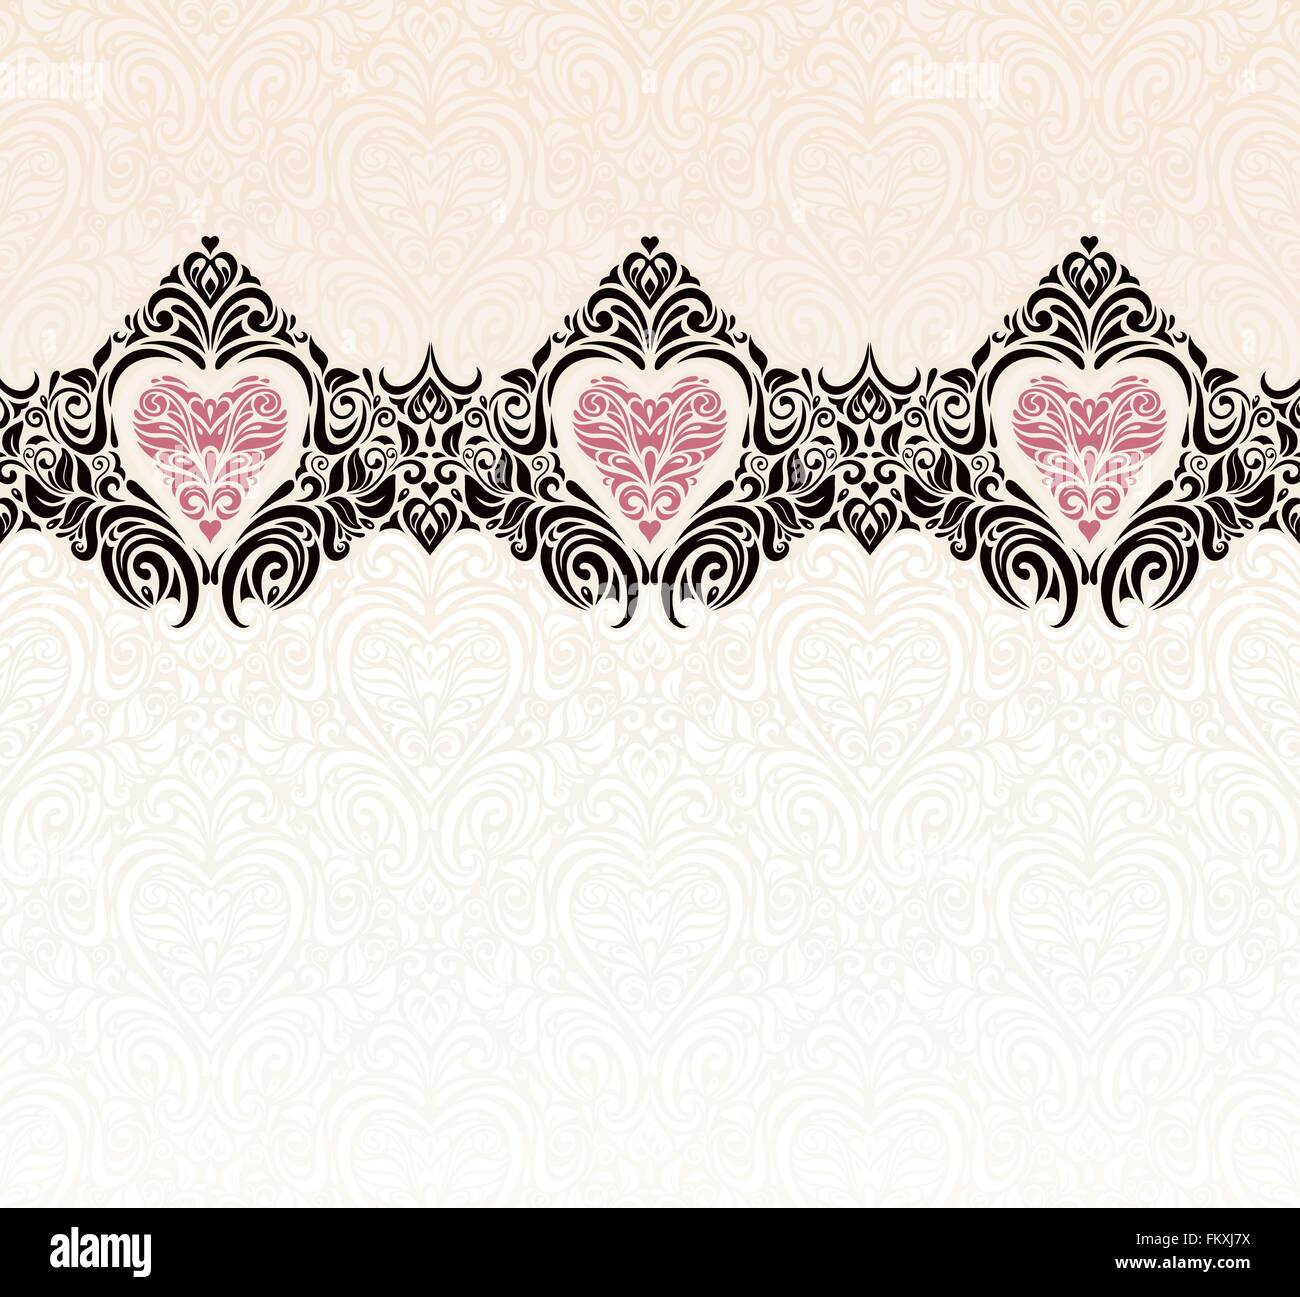 Vintage Hochzeit Ecru & schwarz moderne Einladung Tapete Backgroundwith Herz ornament Stock Vektor